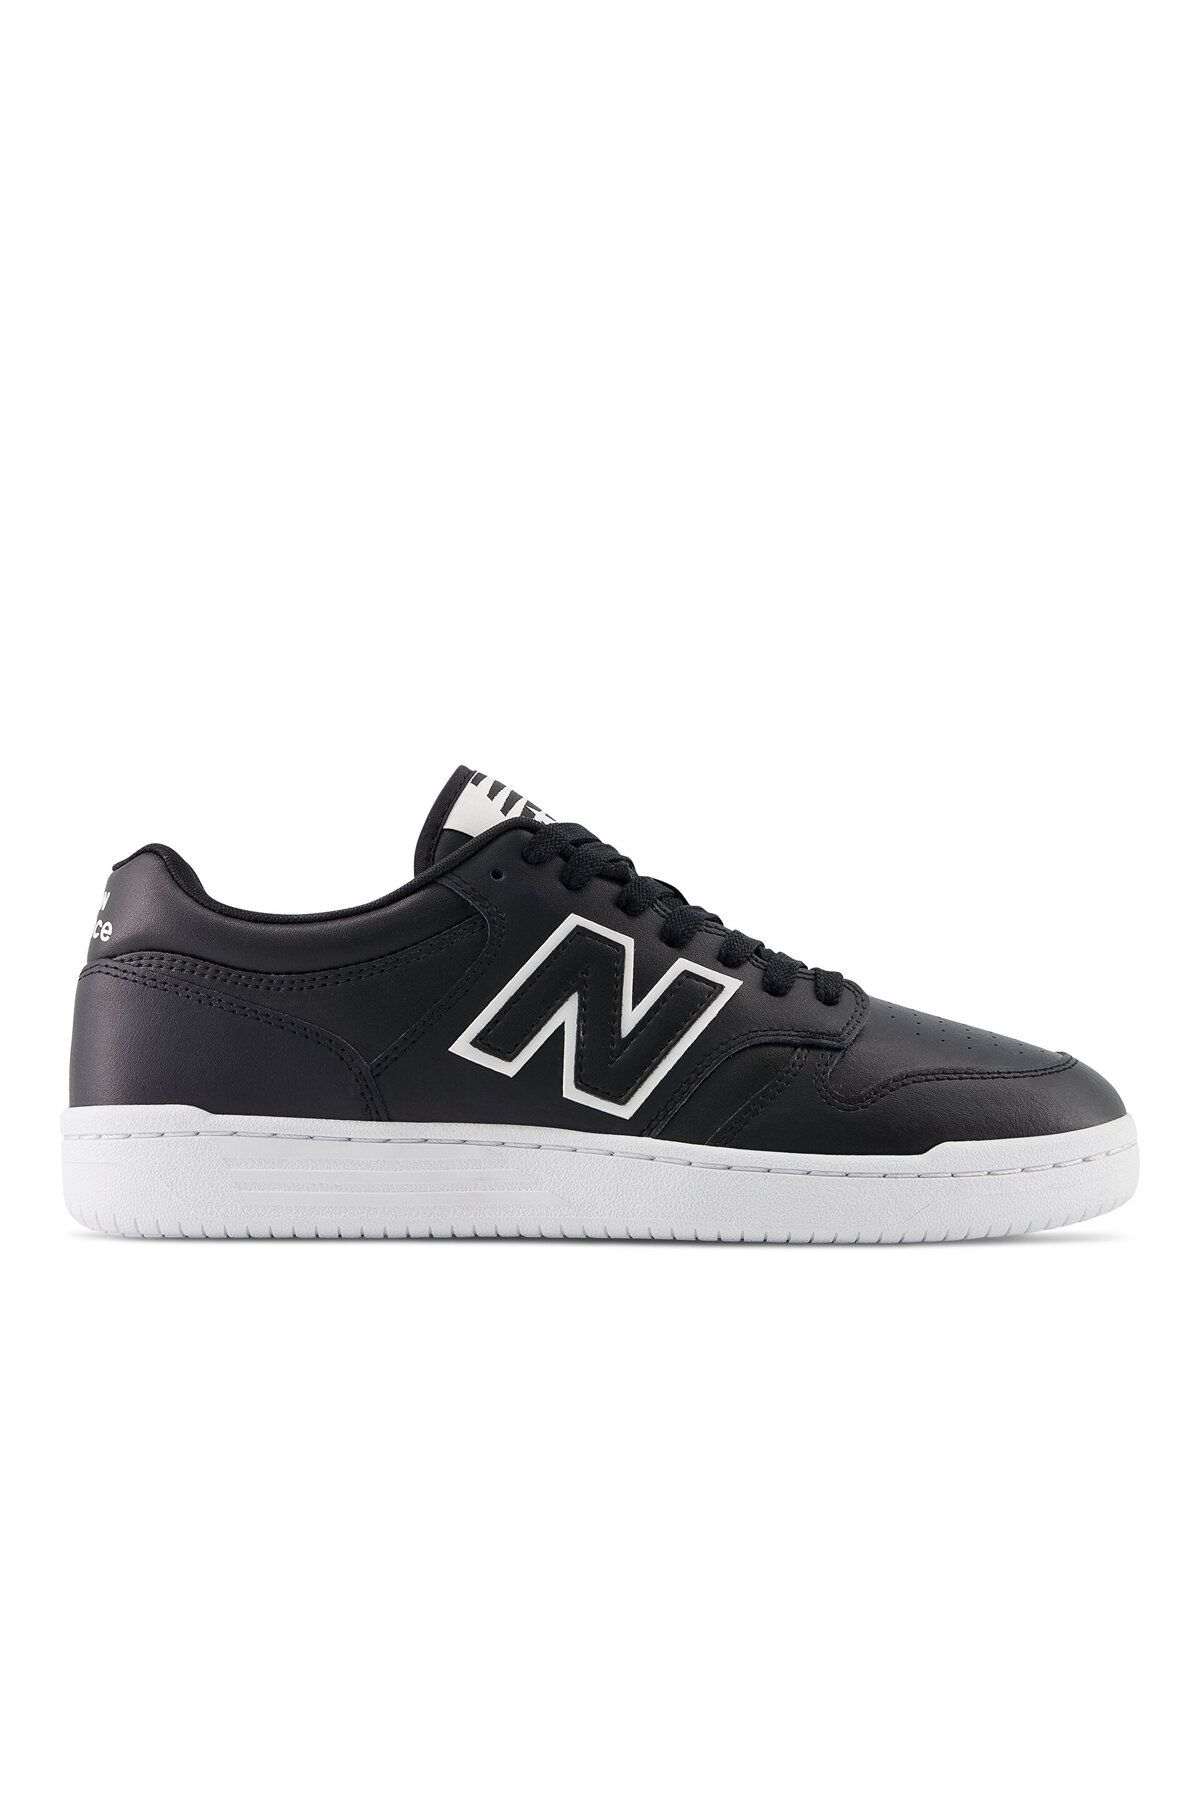 New Balance NB Lifestyle Unisex Shoes